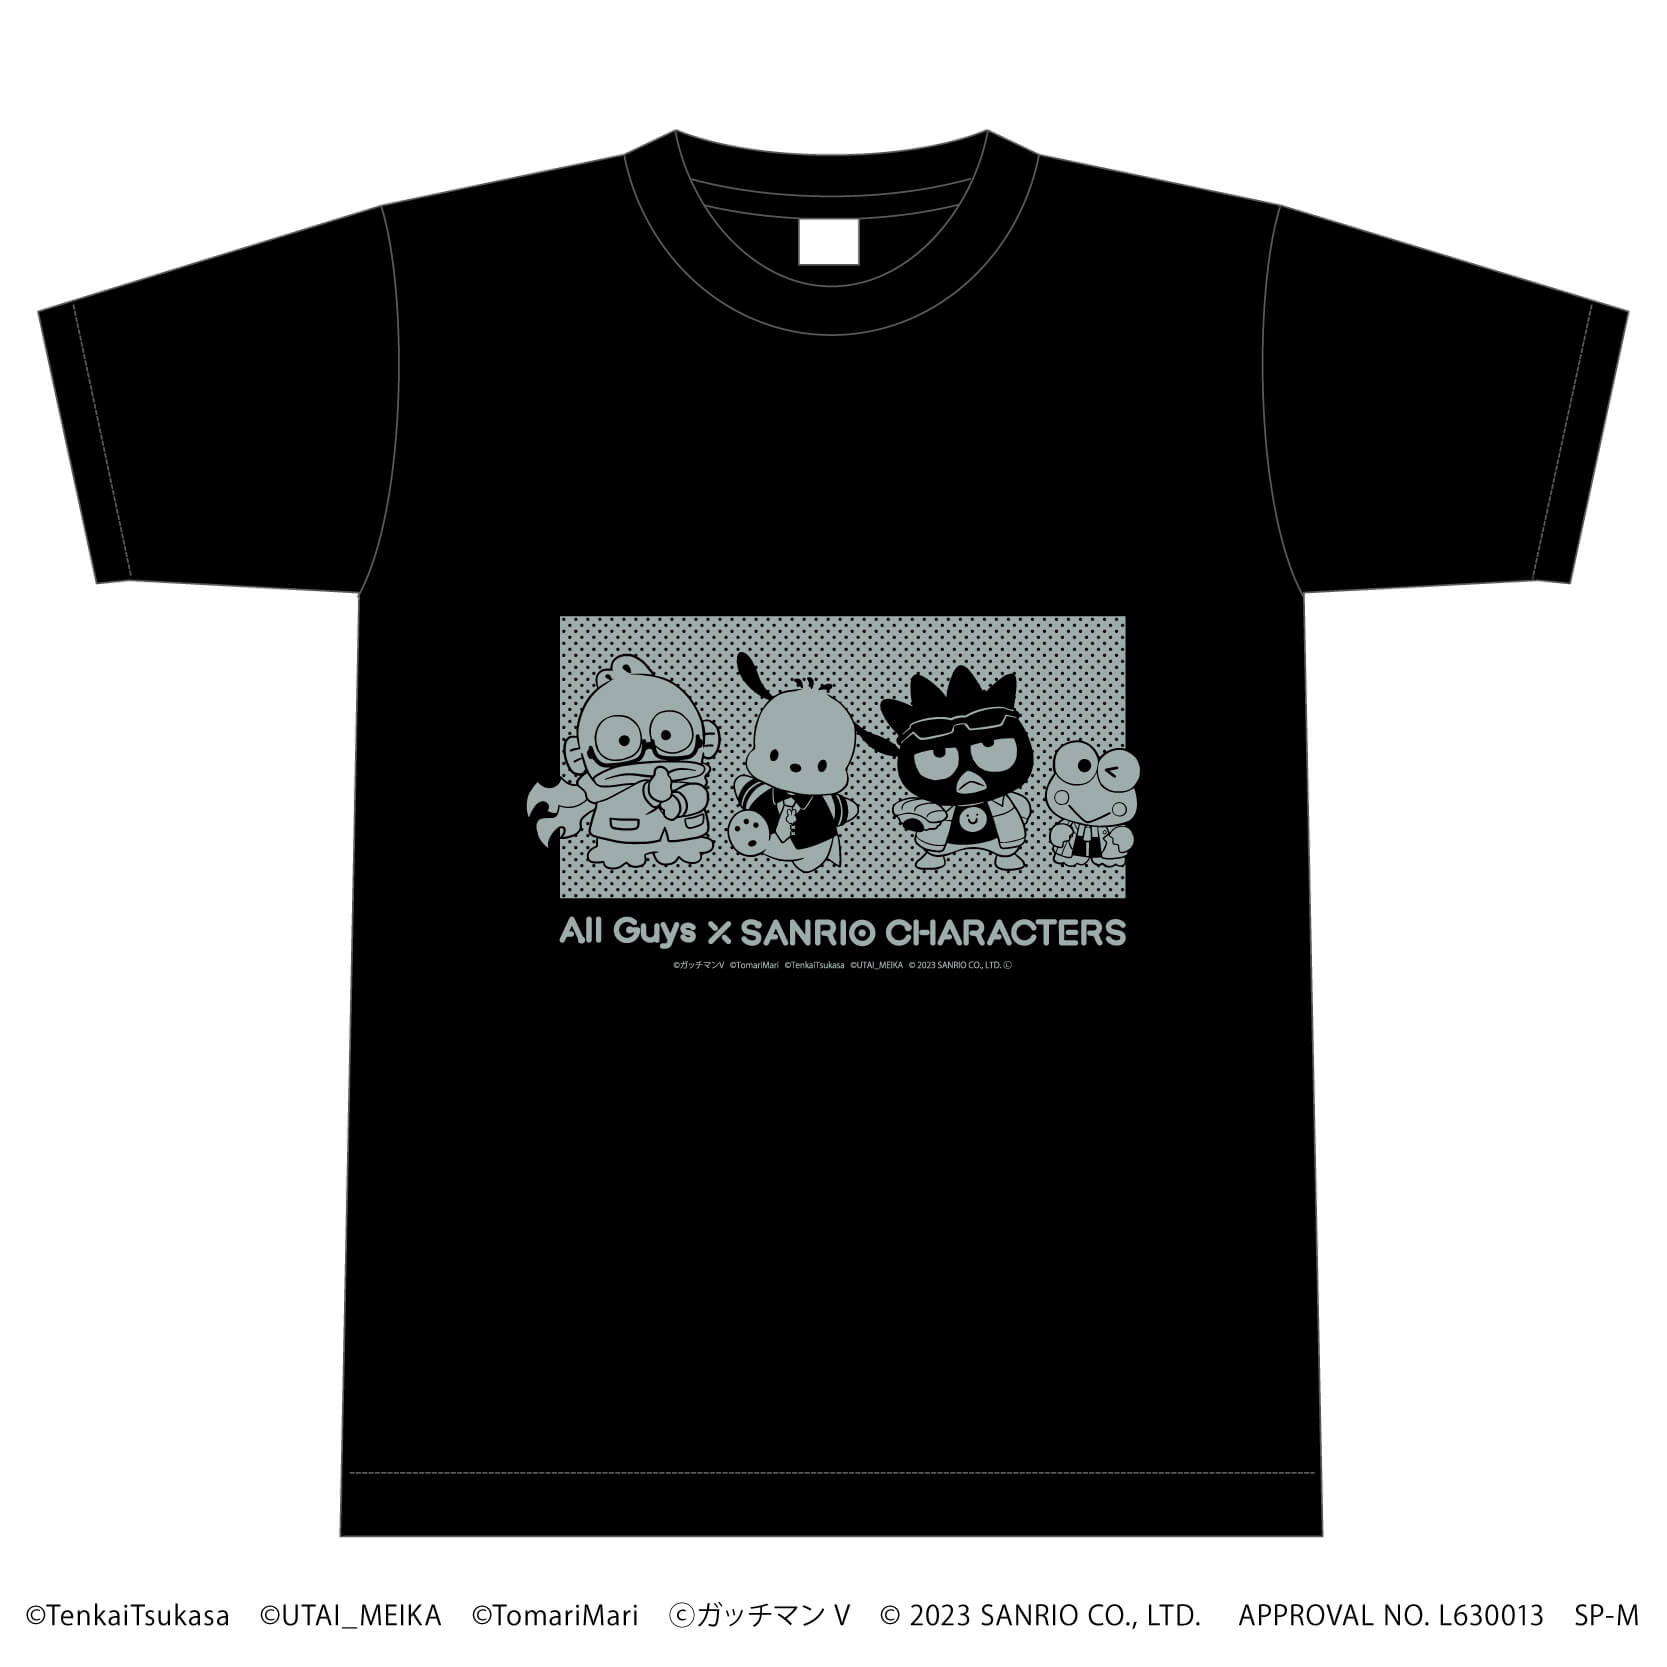 Tシャツ「All Guys×サンリオキャラクターズ」01/サンリオキャラクターズデザイン(ミニキャライラスト)(Lサイズ)